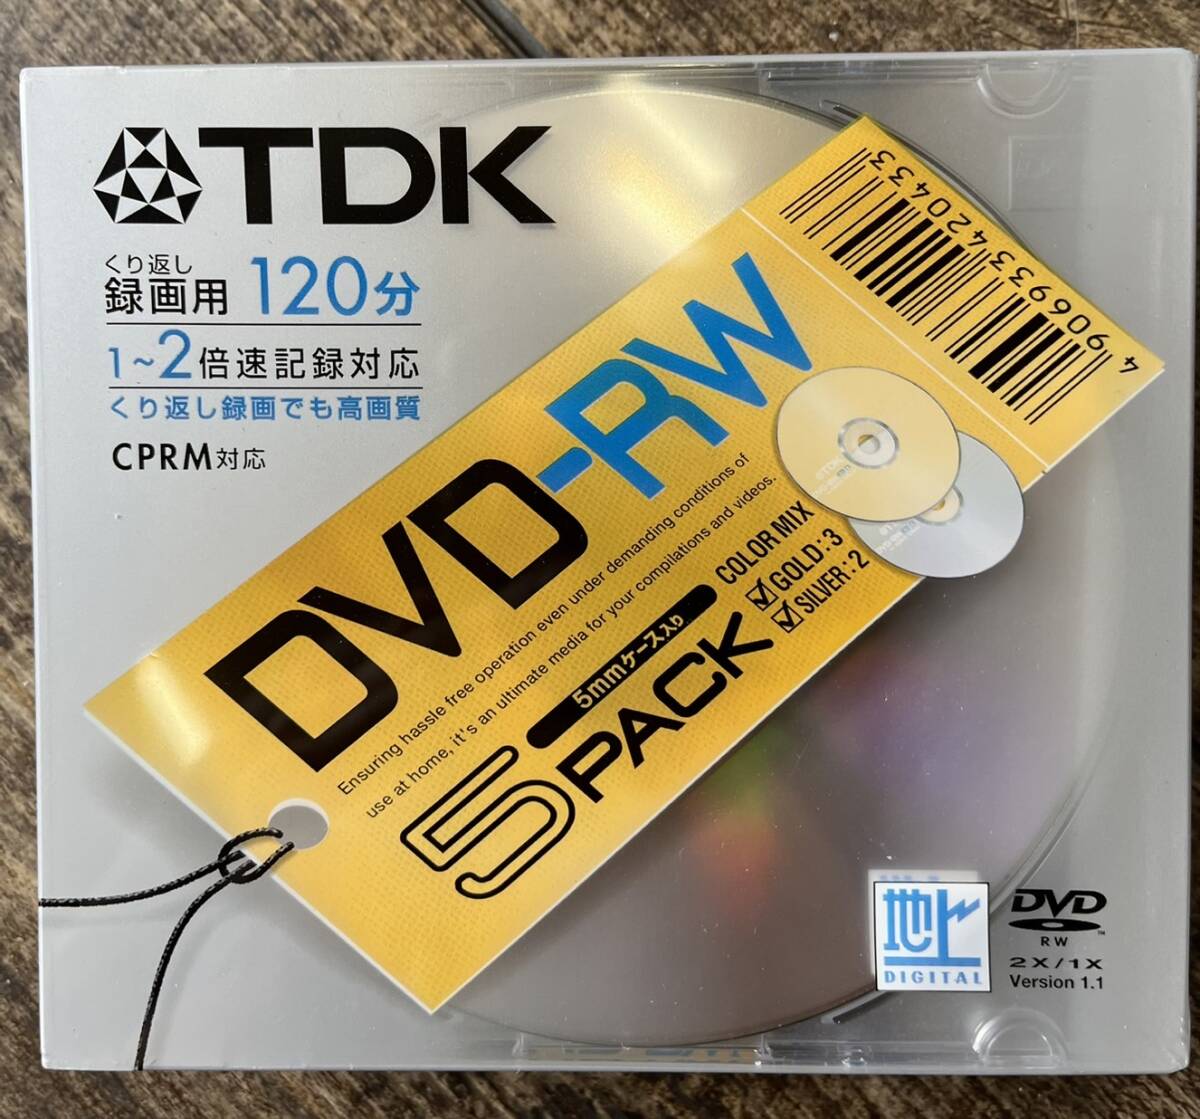 [1 иен старт ]TDK DVD-RW120GDX5U DVD-RW регистрация для Gold этикетка диск 5 листов упаковка DVD-RW120GDX5U⑤